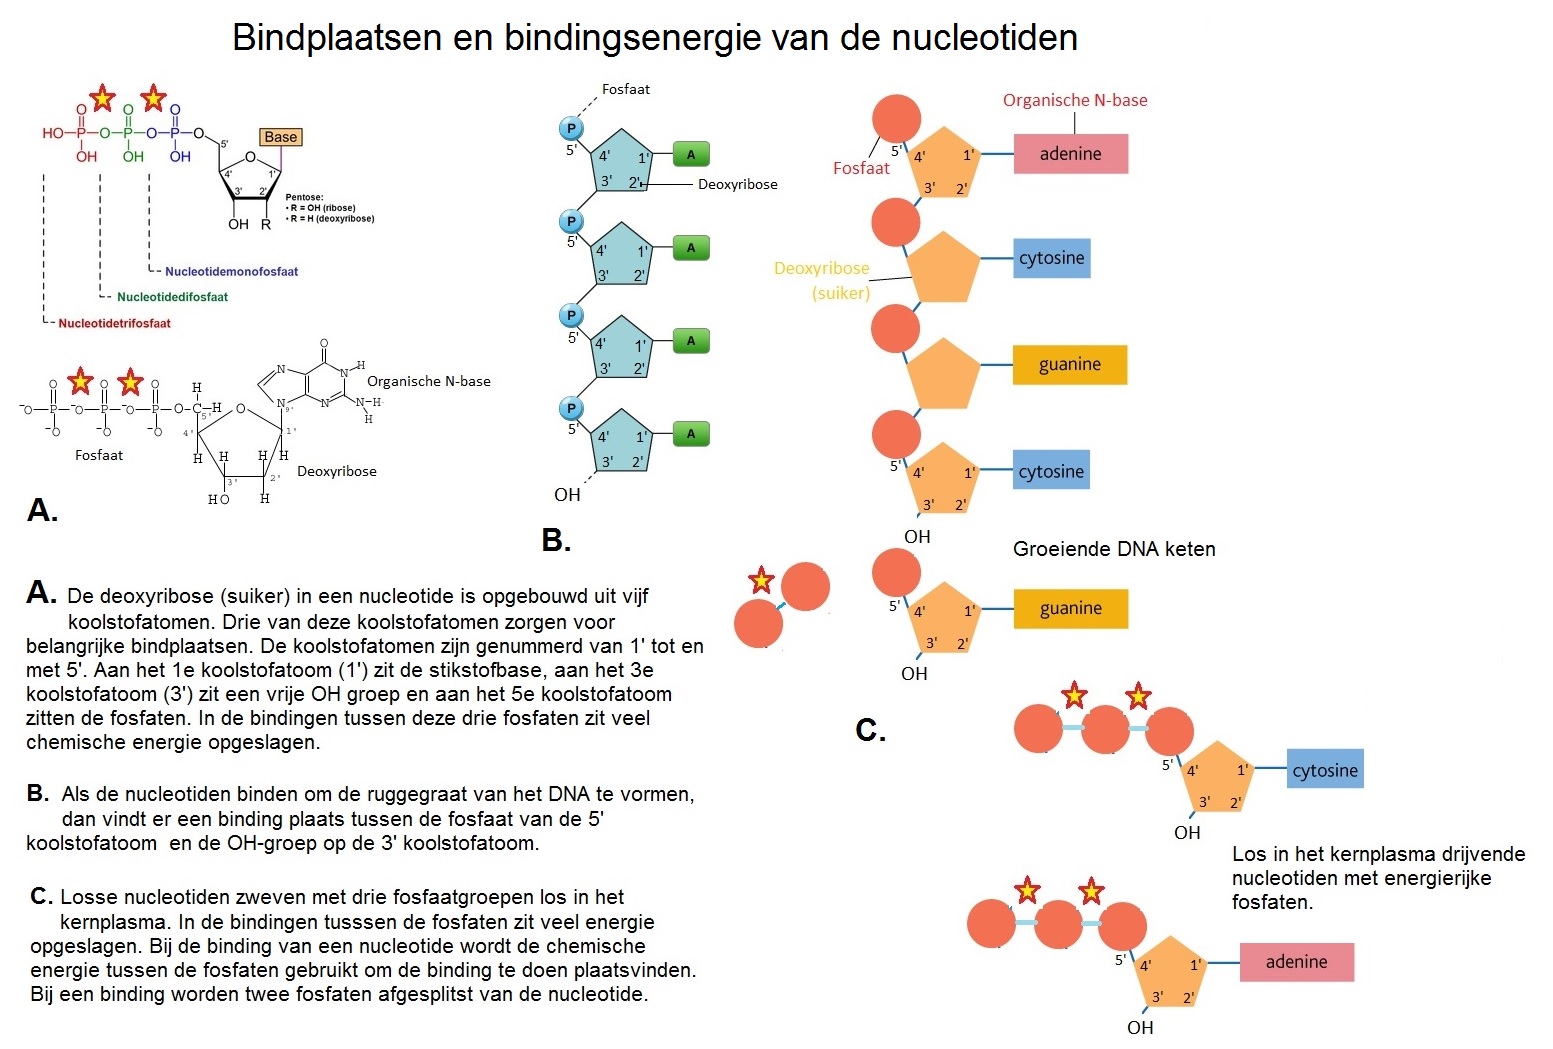 Bindplaatsen en bindingsenergie van de nucleotiden